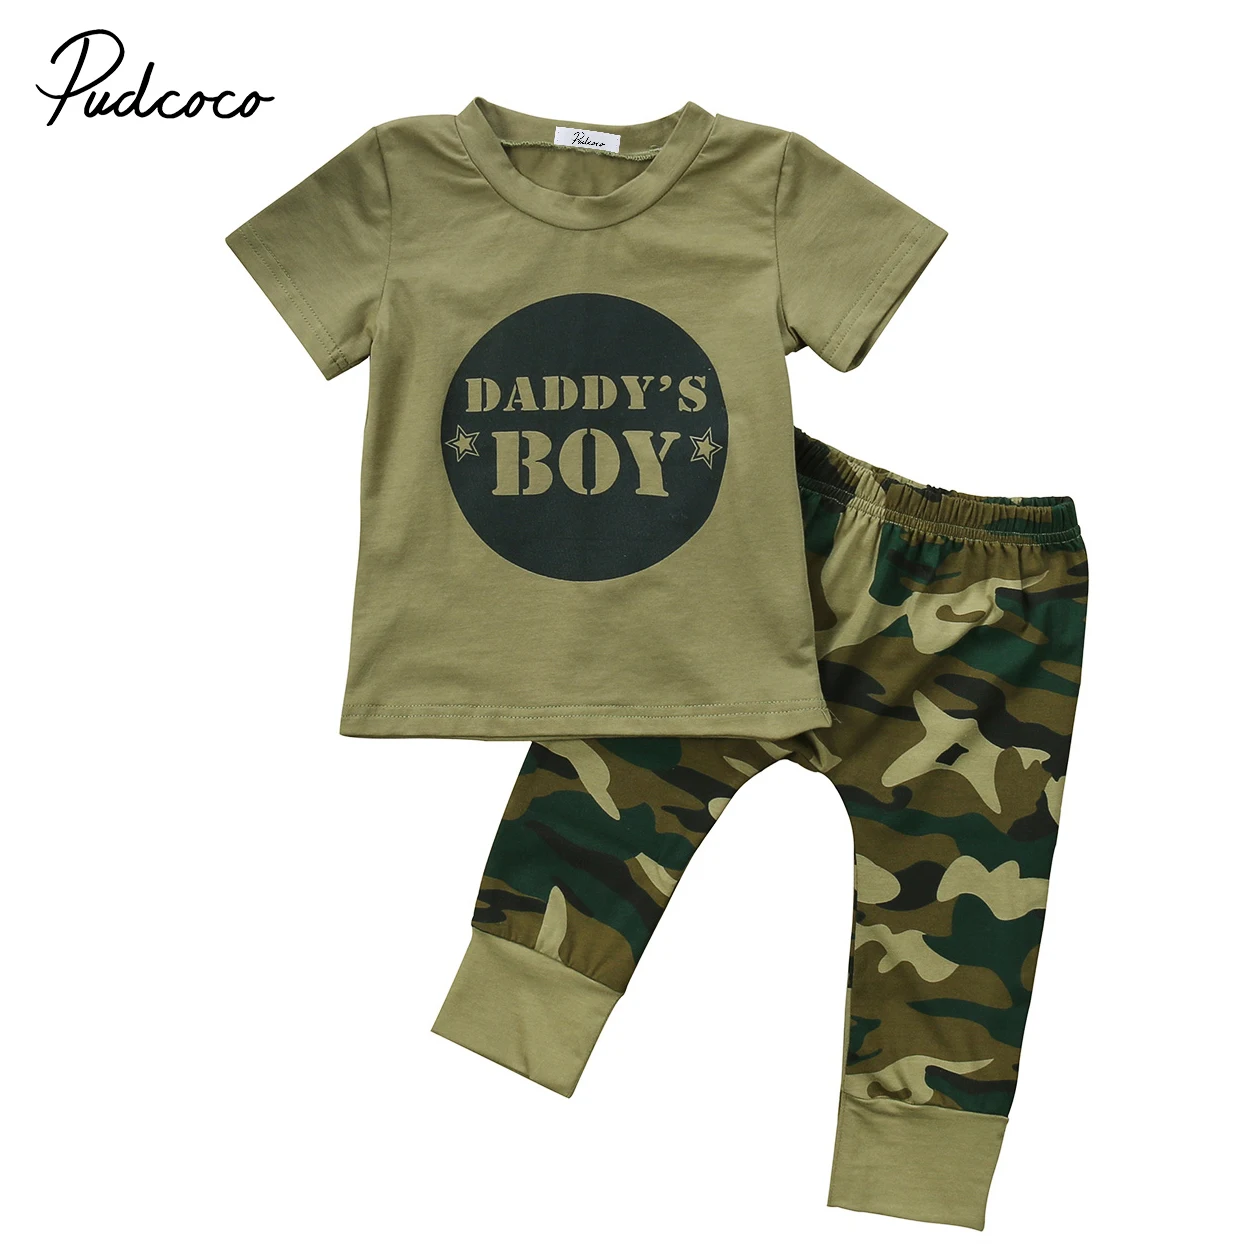 Pudcoco/камуфляжная футболка для новорожденных мальчиков и девочек топы, штаны, комплект одежды, повседневная одежда для детей от 0 до 24